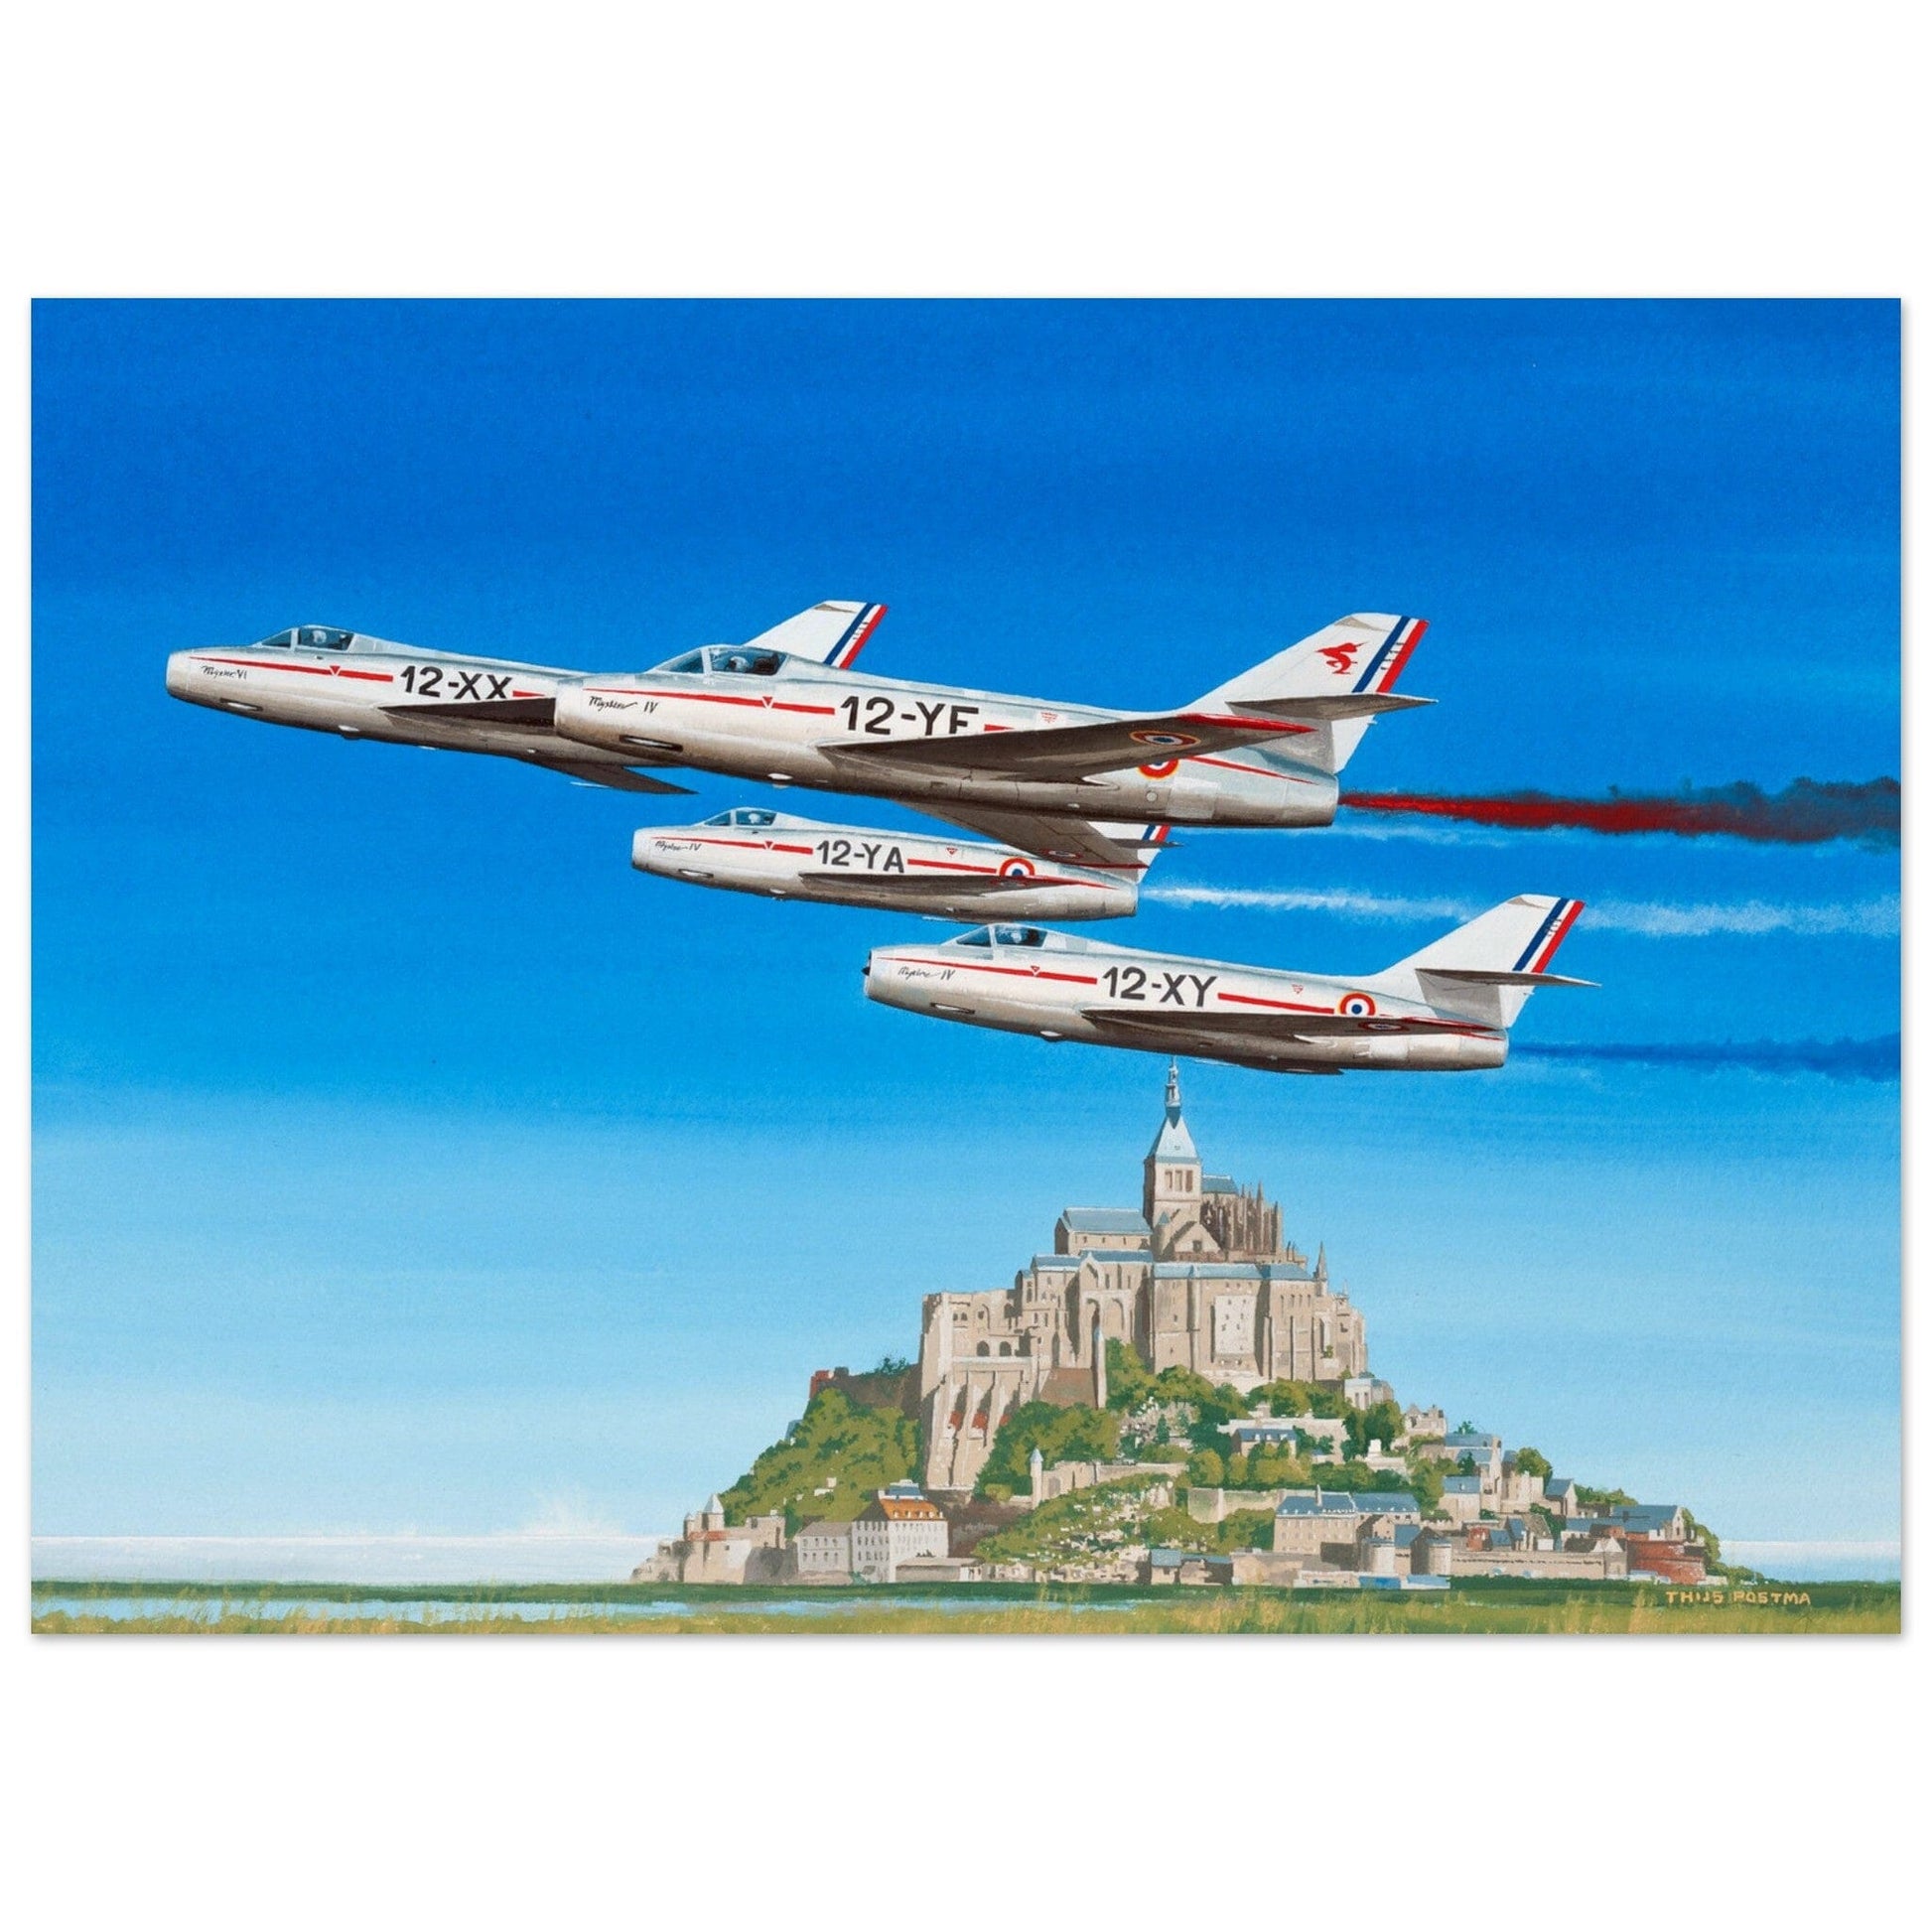 Thijs Postma - Poster - Dassault Mystère IV Patrouille de France Poster Only TP Aviation Art 50x70 cm / 20x28″ 